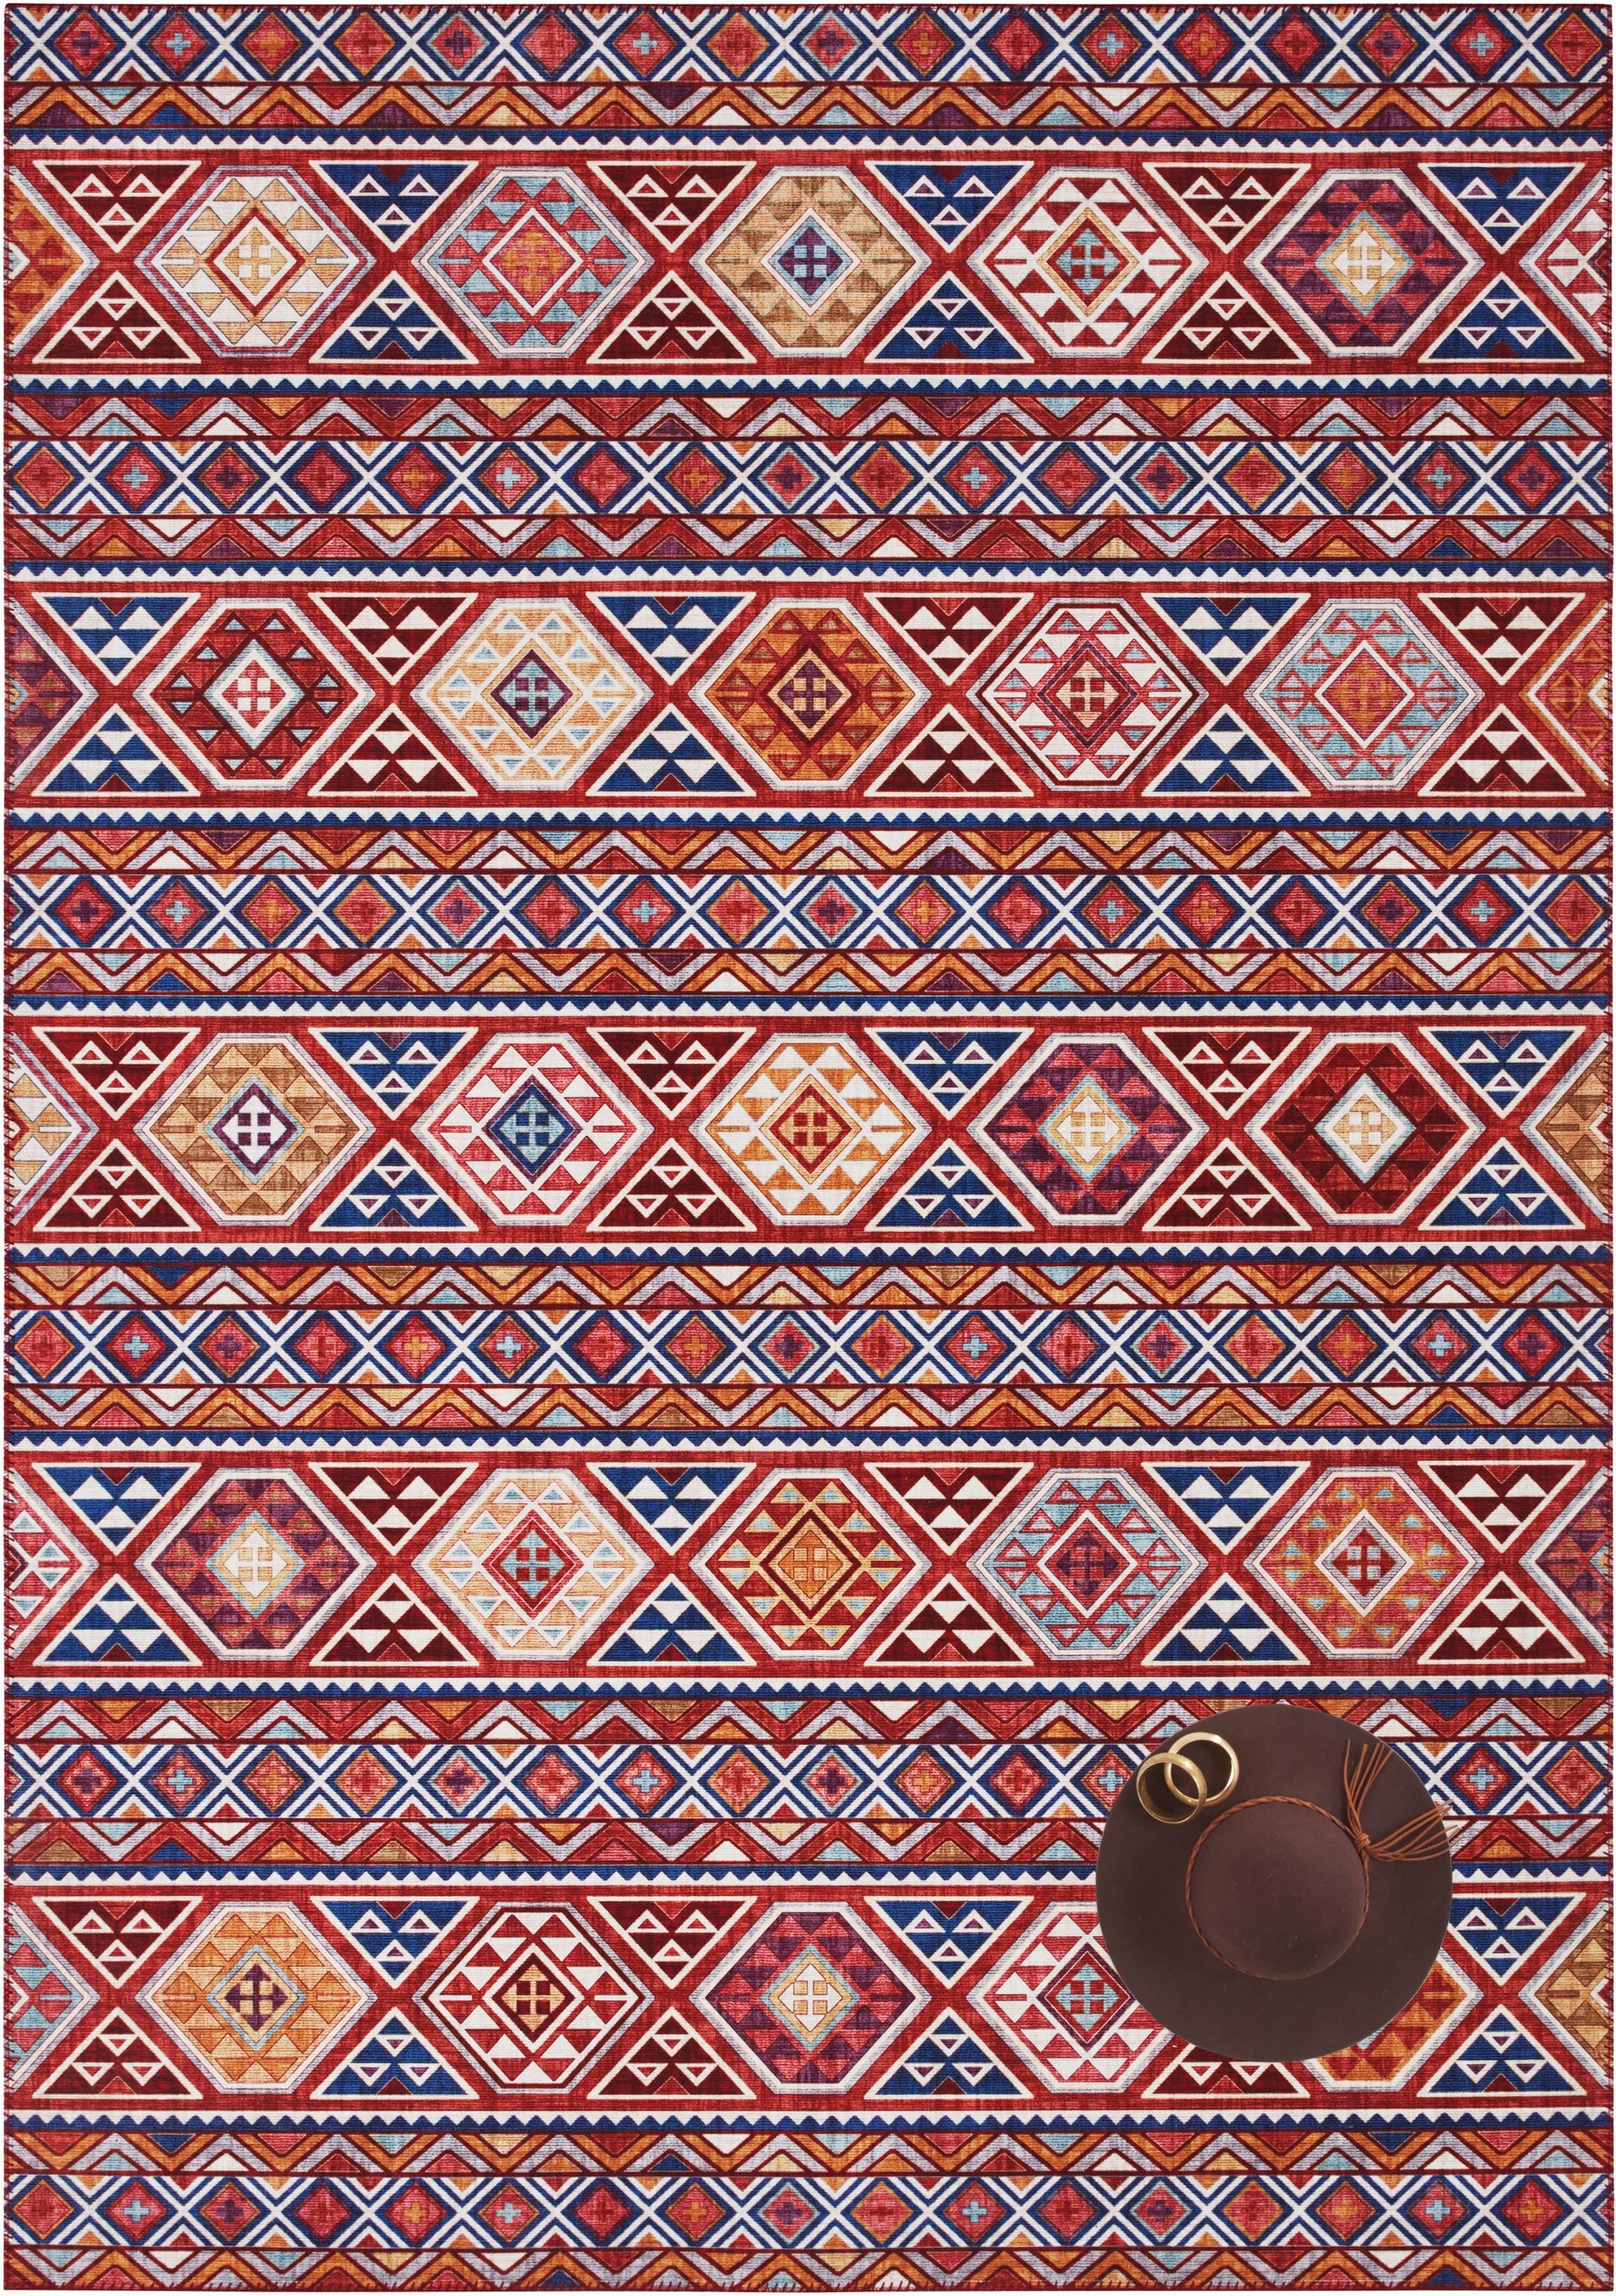 ELLE DECORATION Teppich »Anatolian«, rechteckig, Orient Optik, Vintage Design, gekettelt, kräftige Farben